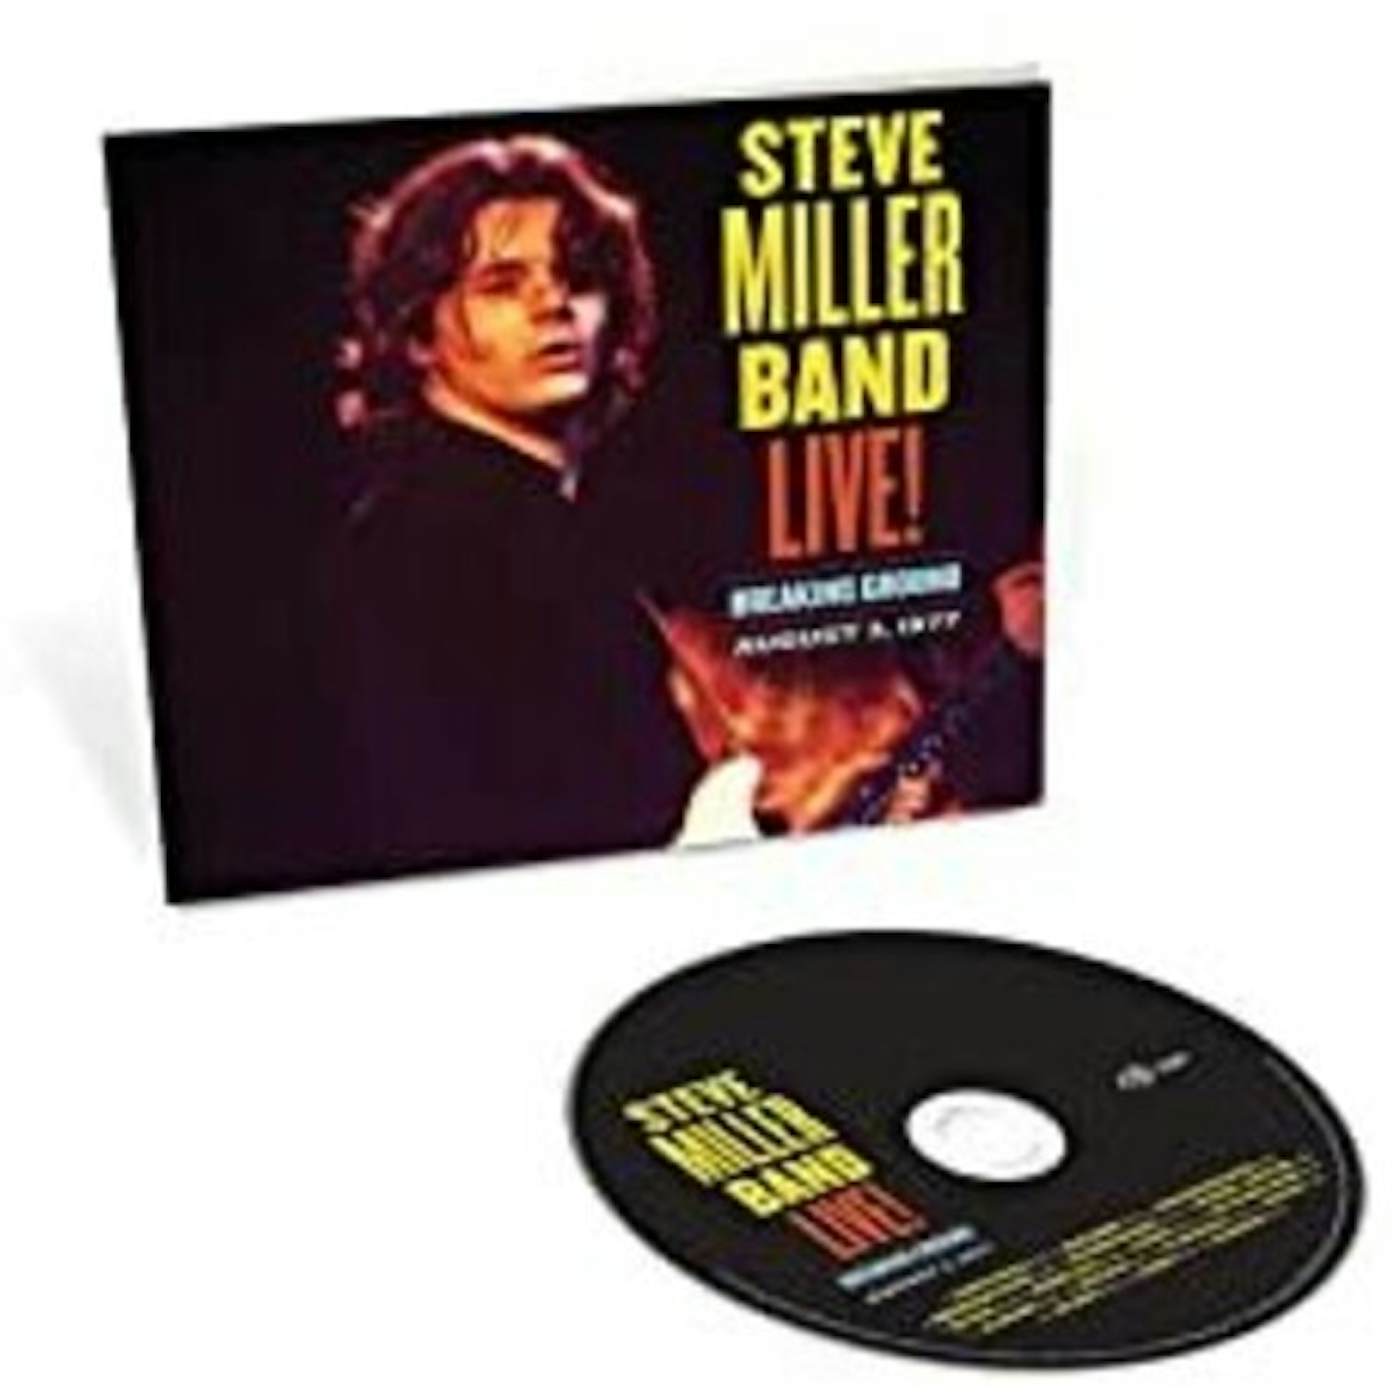 Steve Miller Band LIVE BREAKING GROUND AUGUST 3 1977 CD